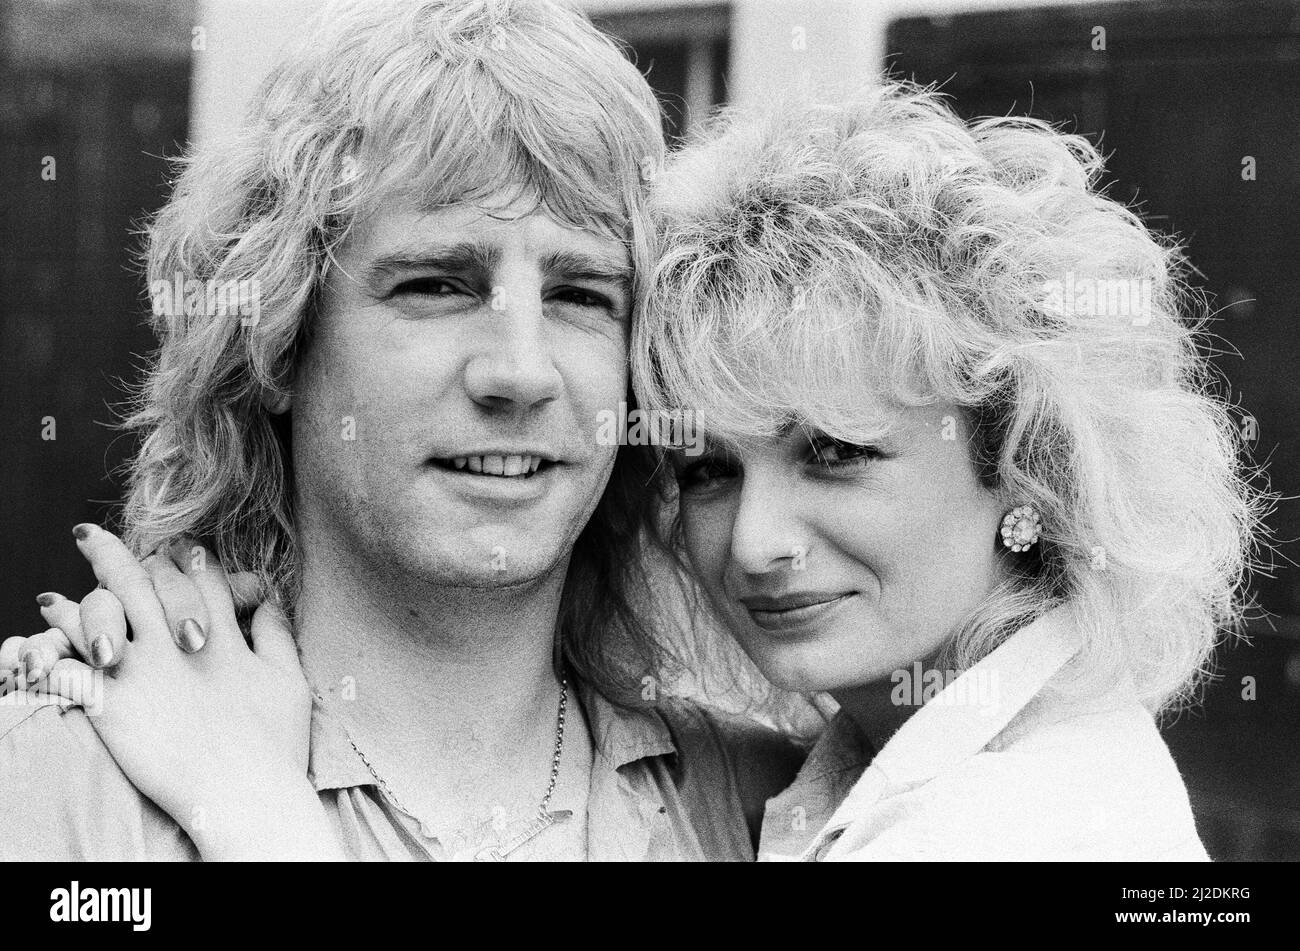 Rick Parfitt, membre de la bande du statu quo, et sa nouvelle petite amie Patty Beedon. 12th juillet 1985. Banque D'Images